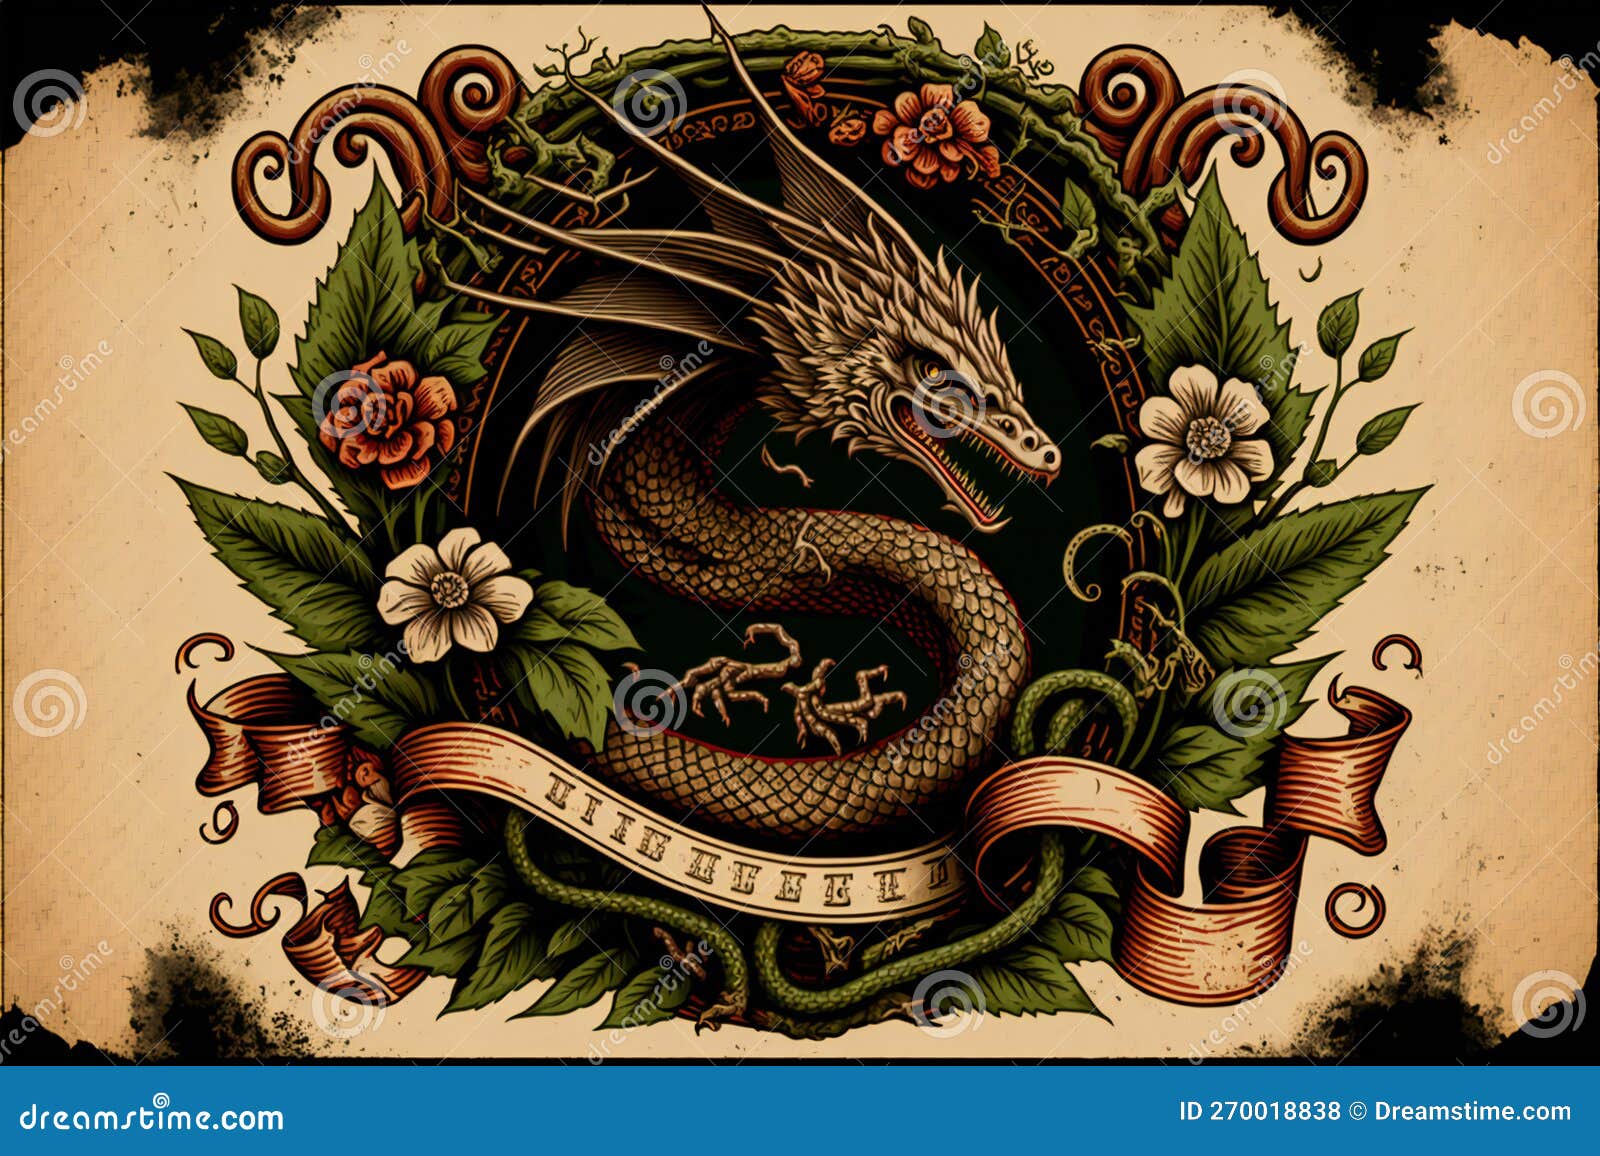 Top 97+ eagle dragon tattoo latest